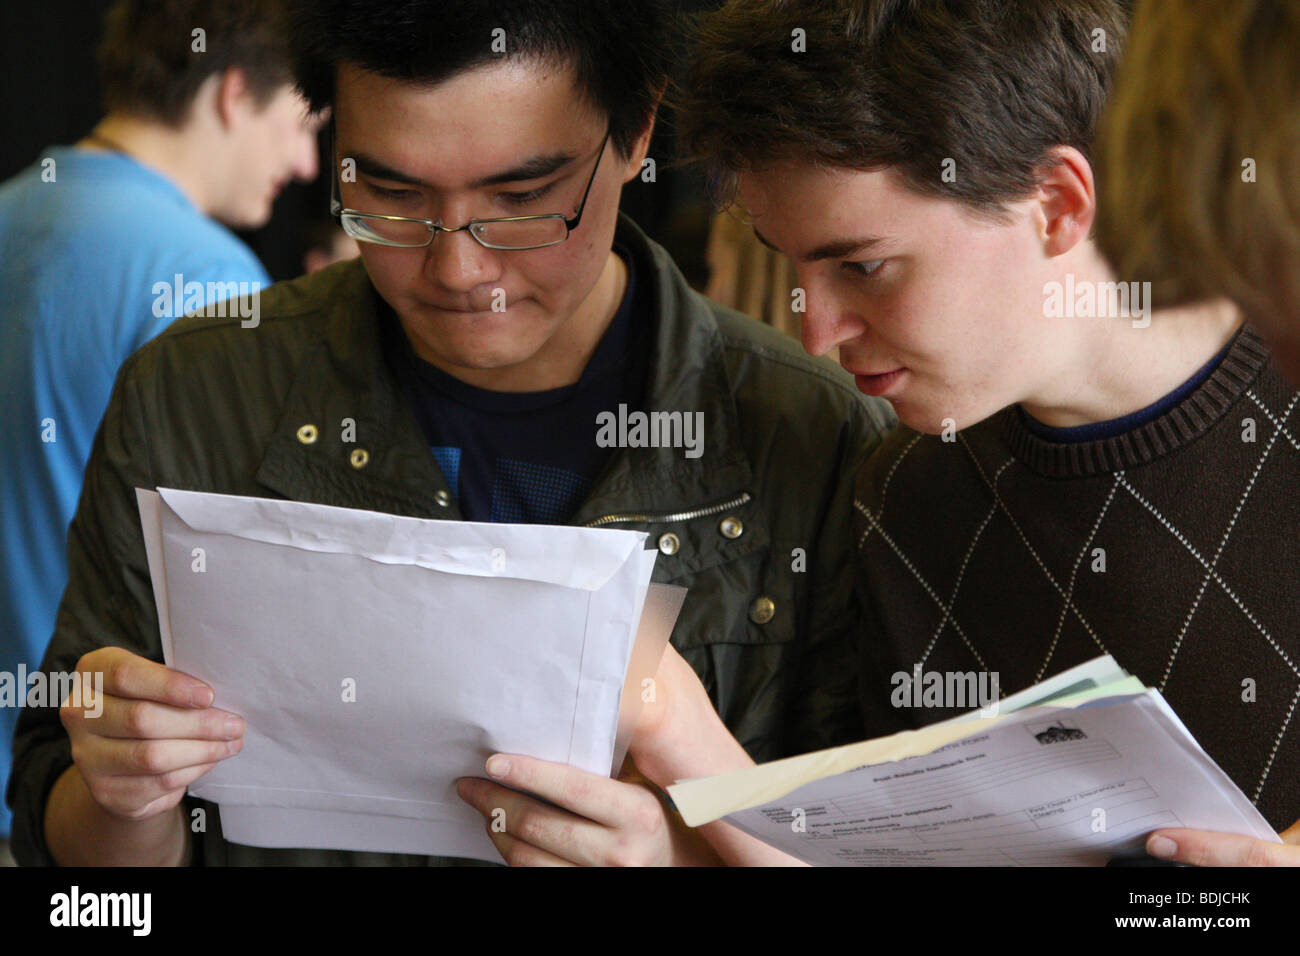 Los Estudiantes Reciben Sus Resultados De Examenes Gsce Fotografia De Stock Alamy